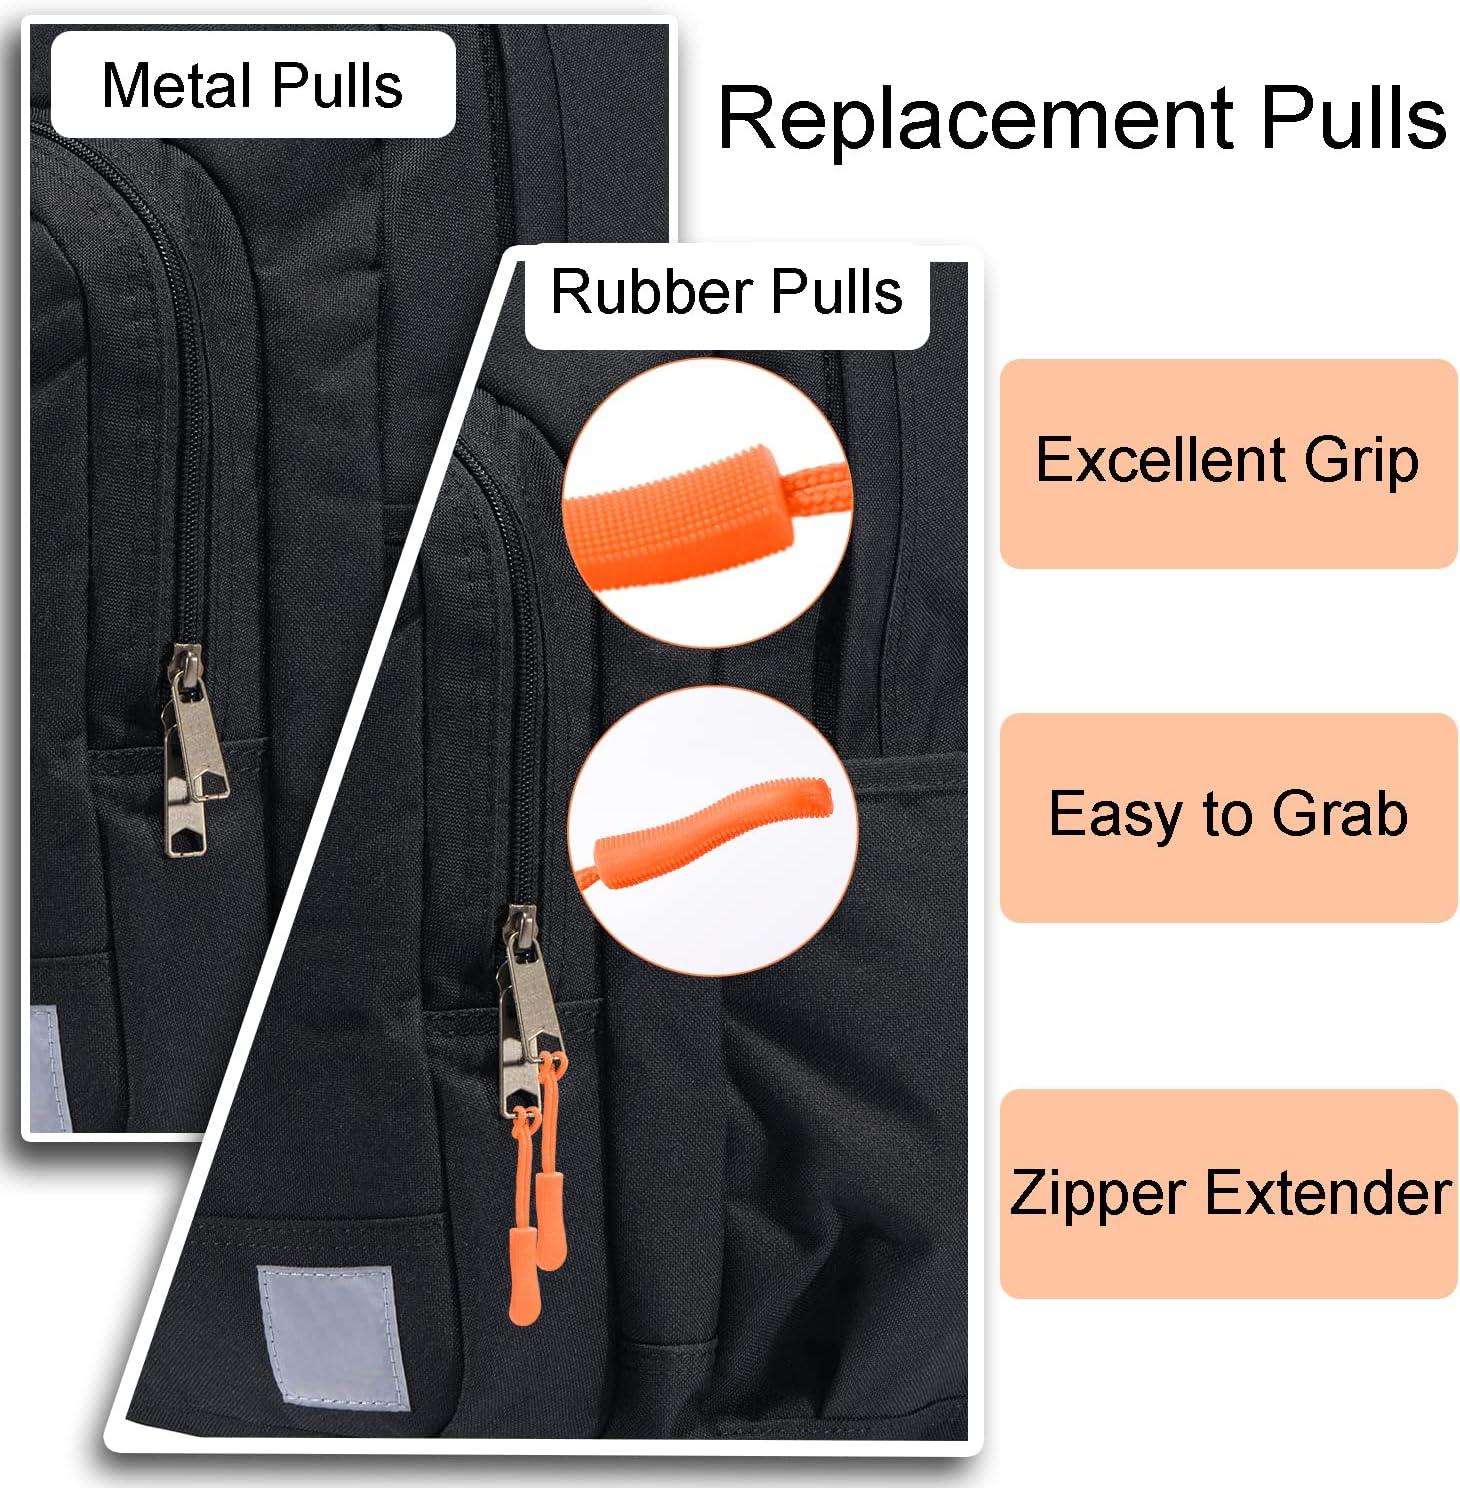 How to Fix a Zipper On a Golf Bag 